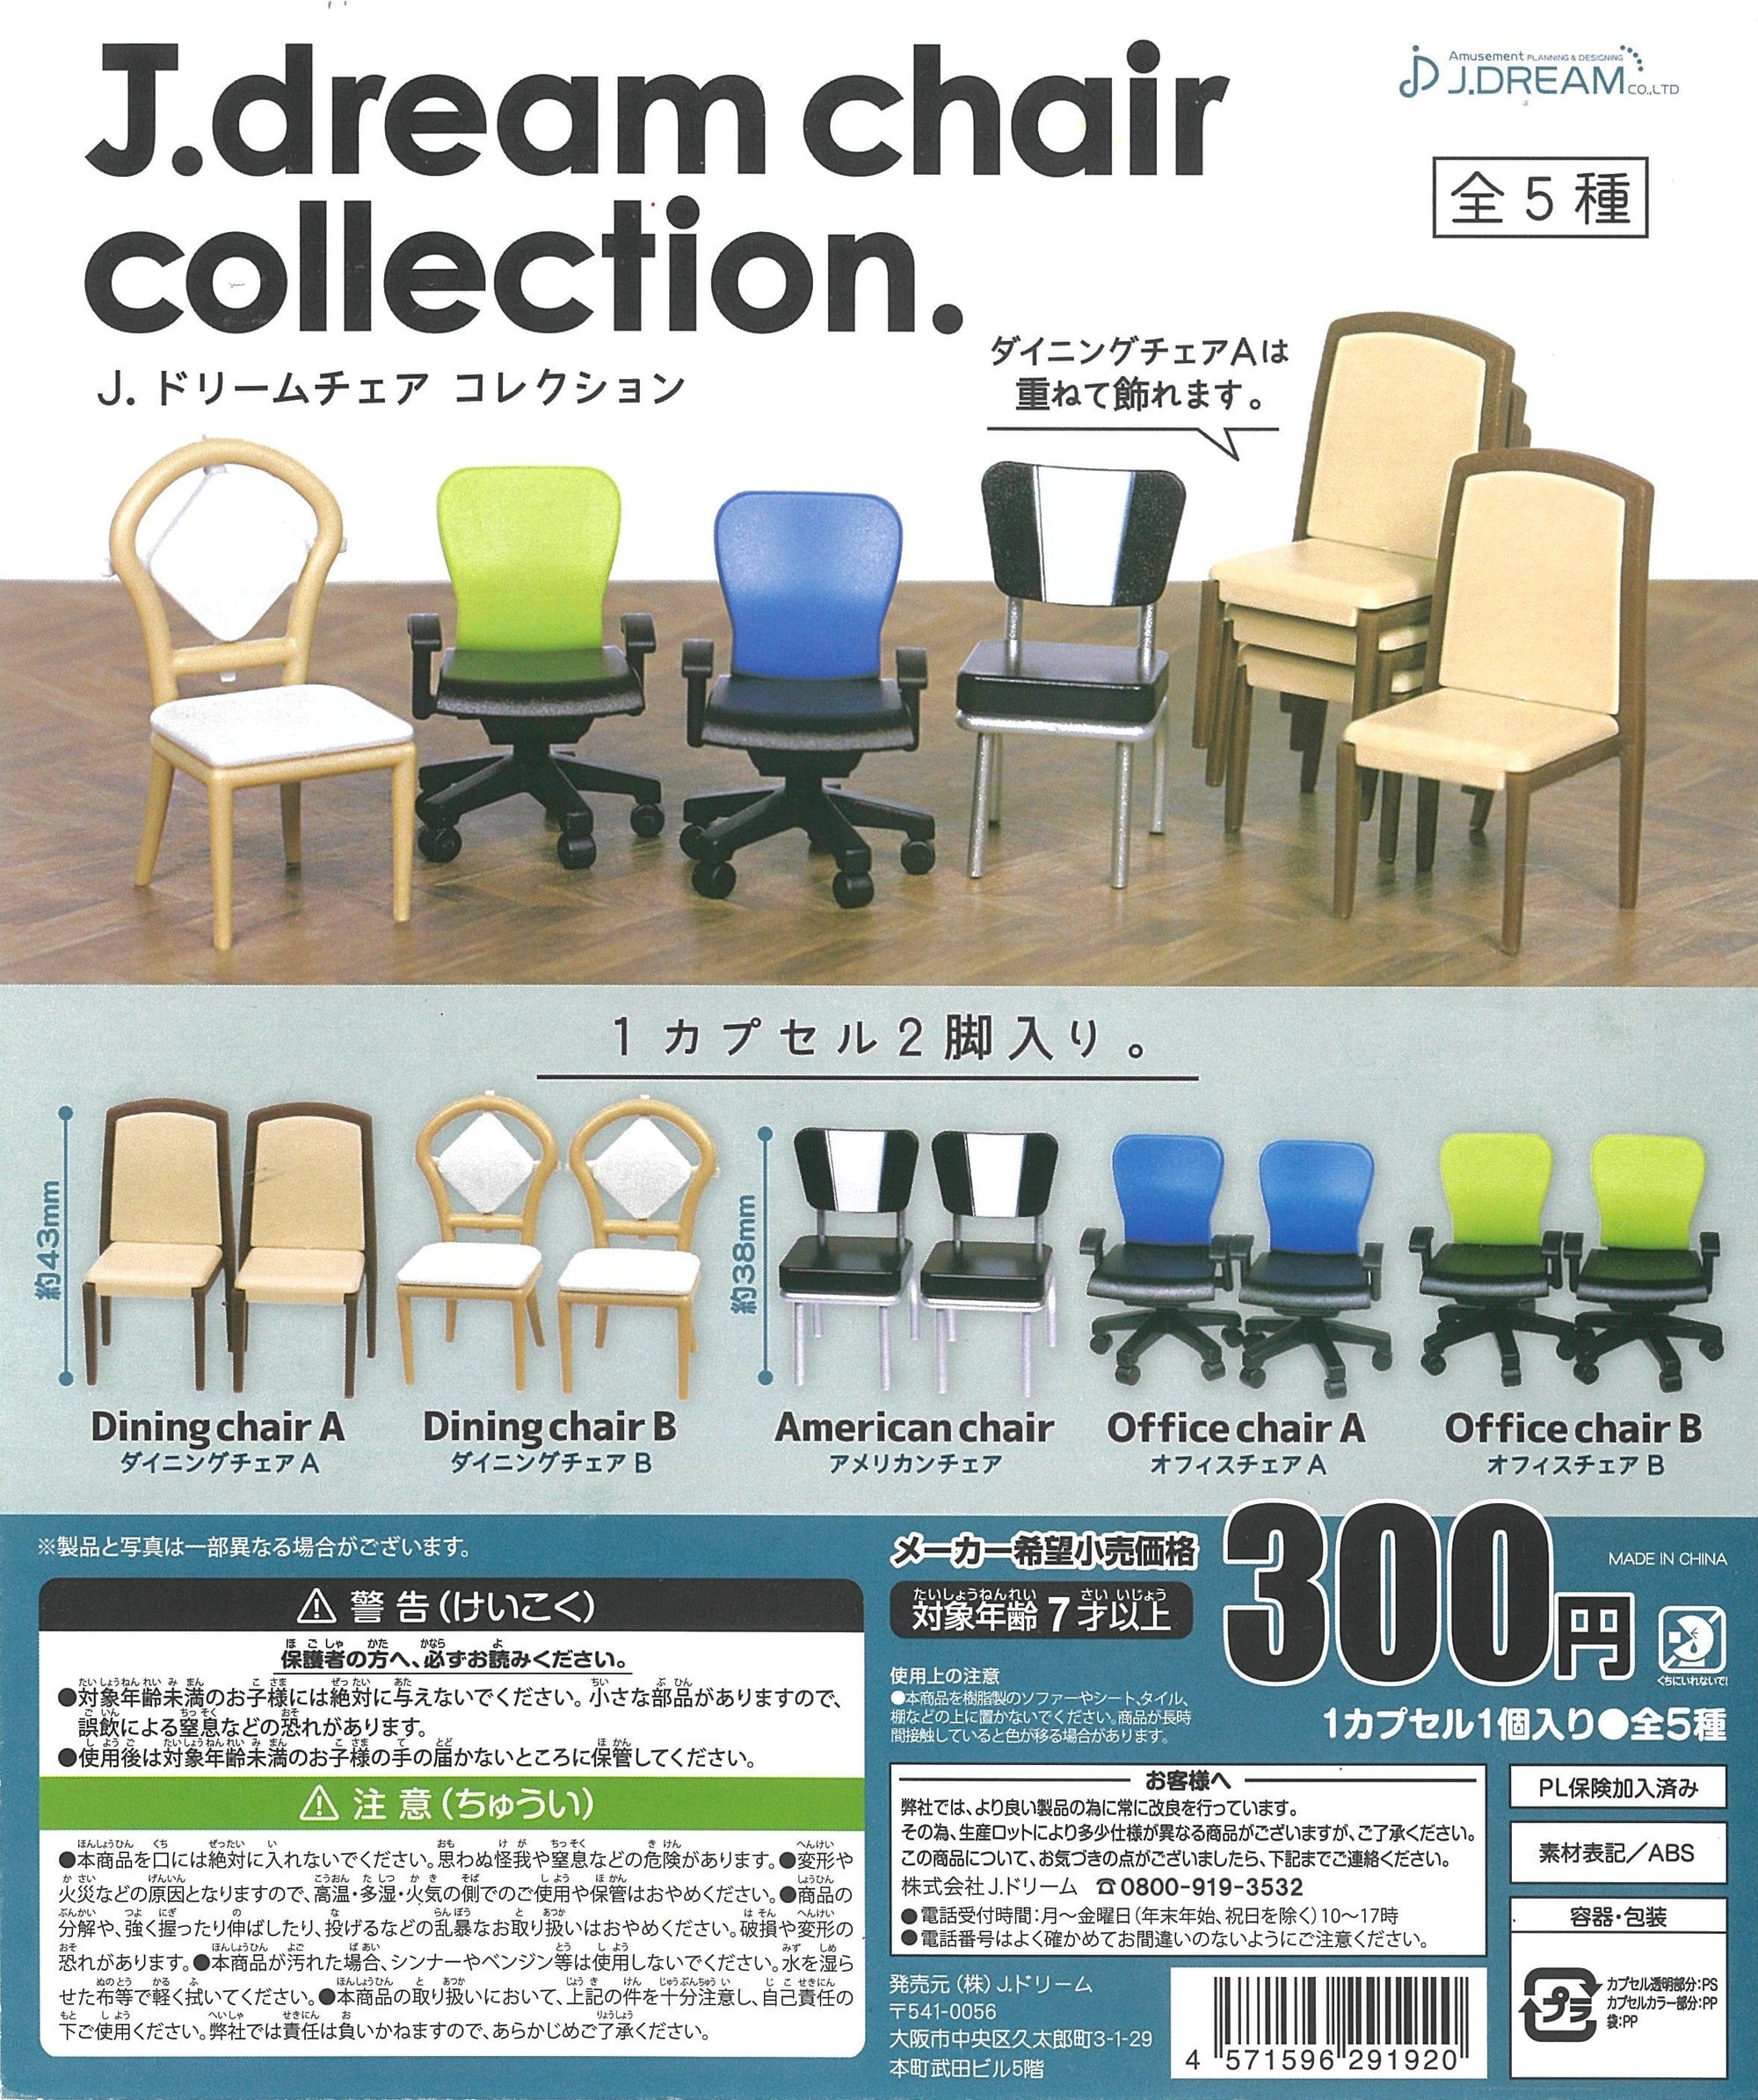 J.DREAM CP1780 J.dream Chair Collection